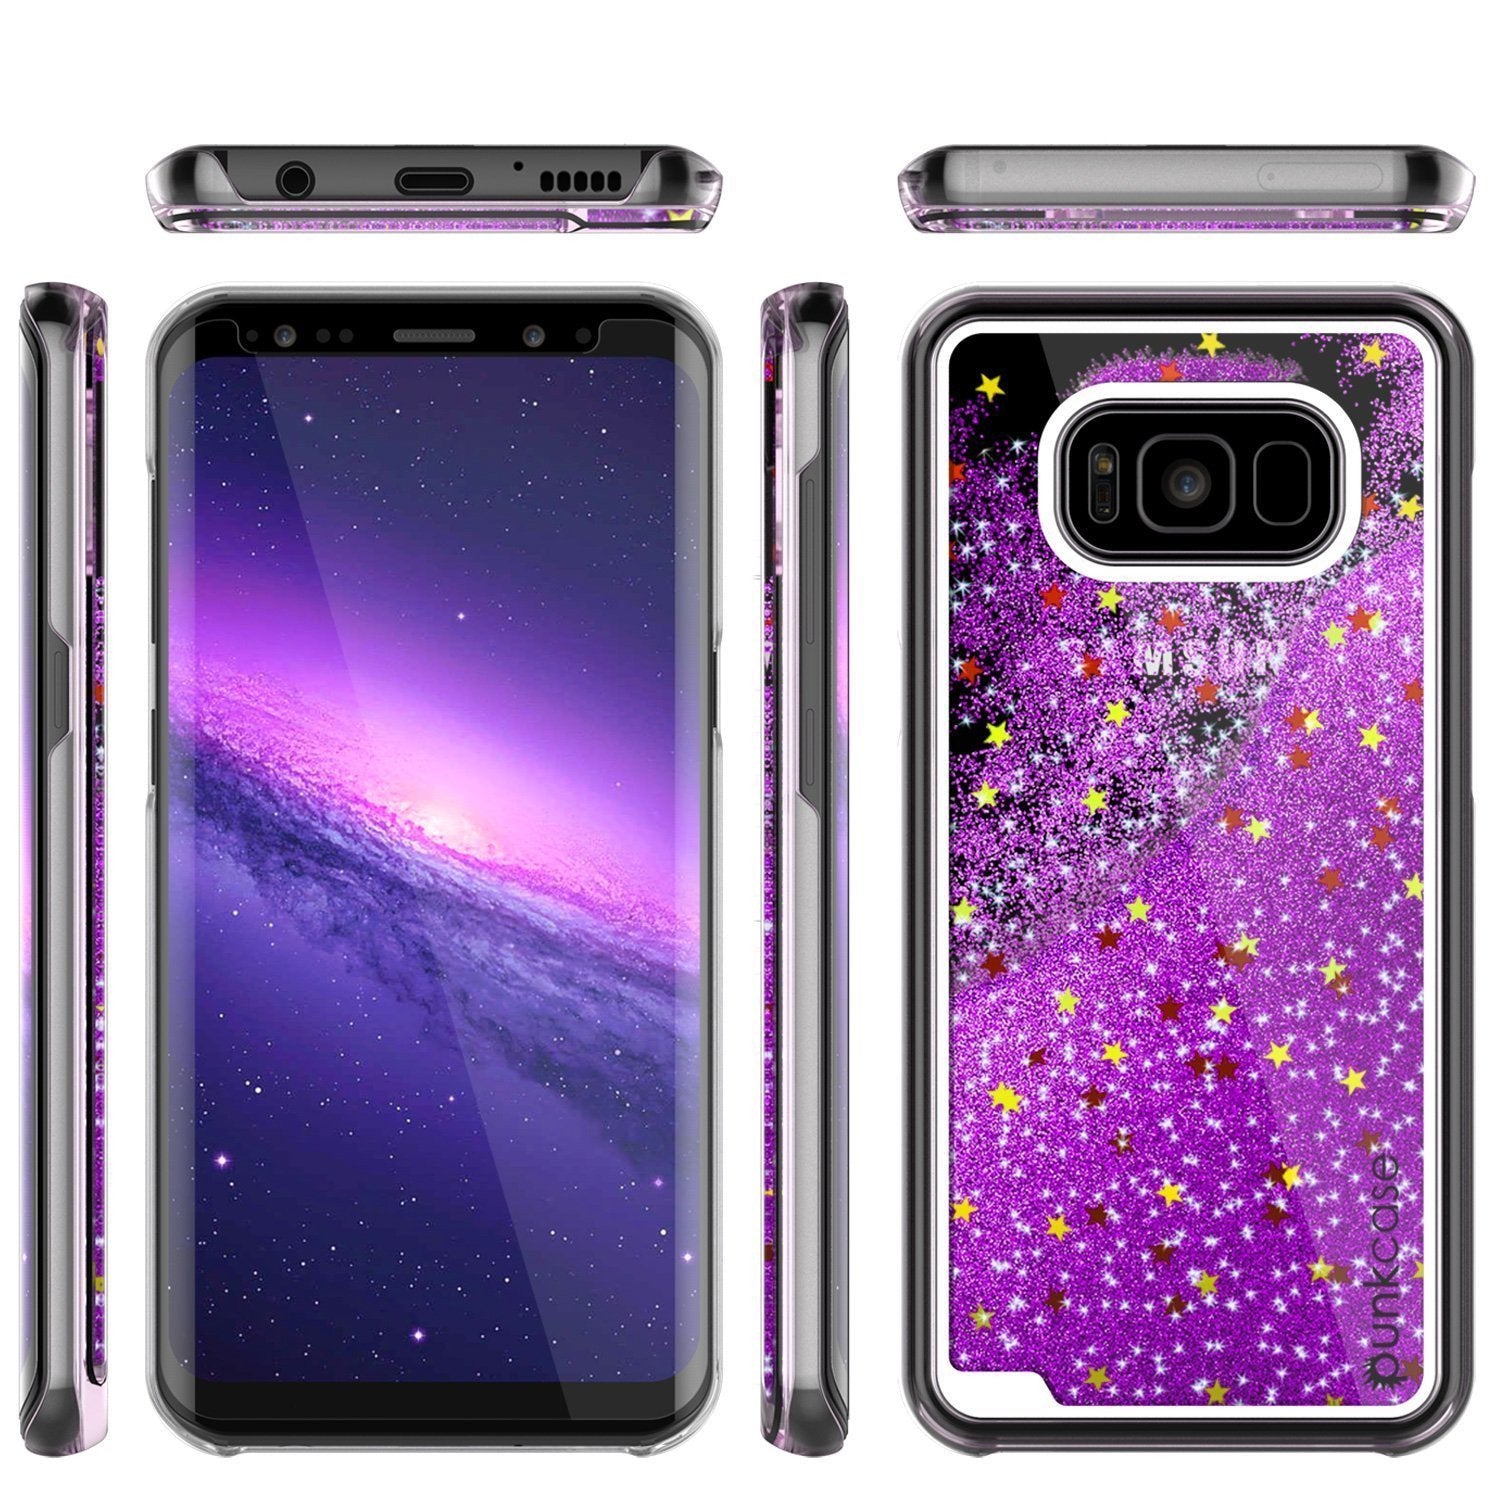 Galaxy S8 Case, Punkcase Liquid Purple Series Protective Glitter Cover